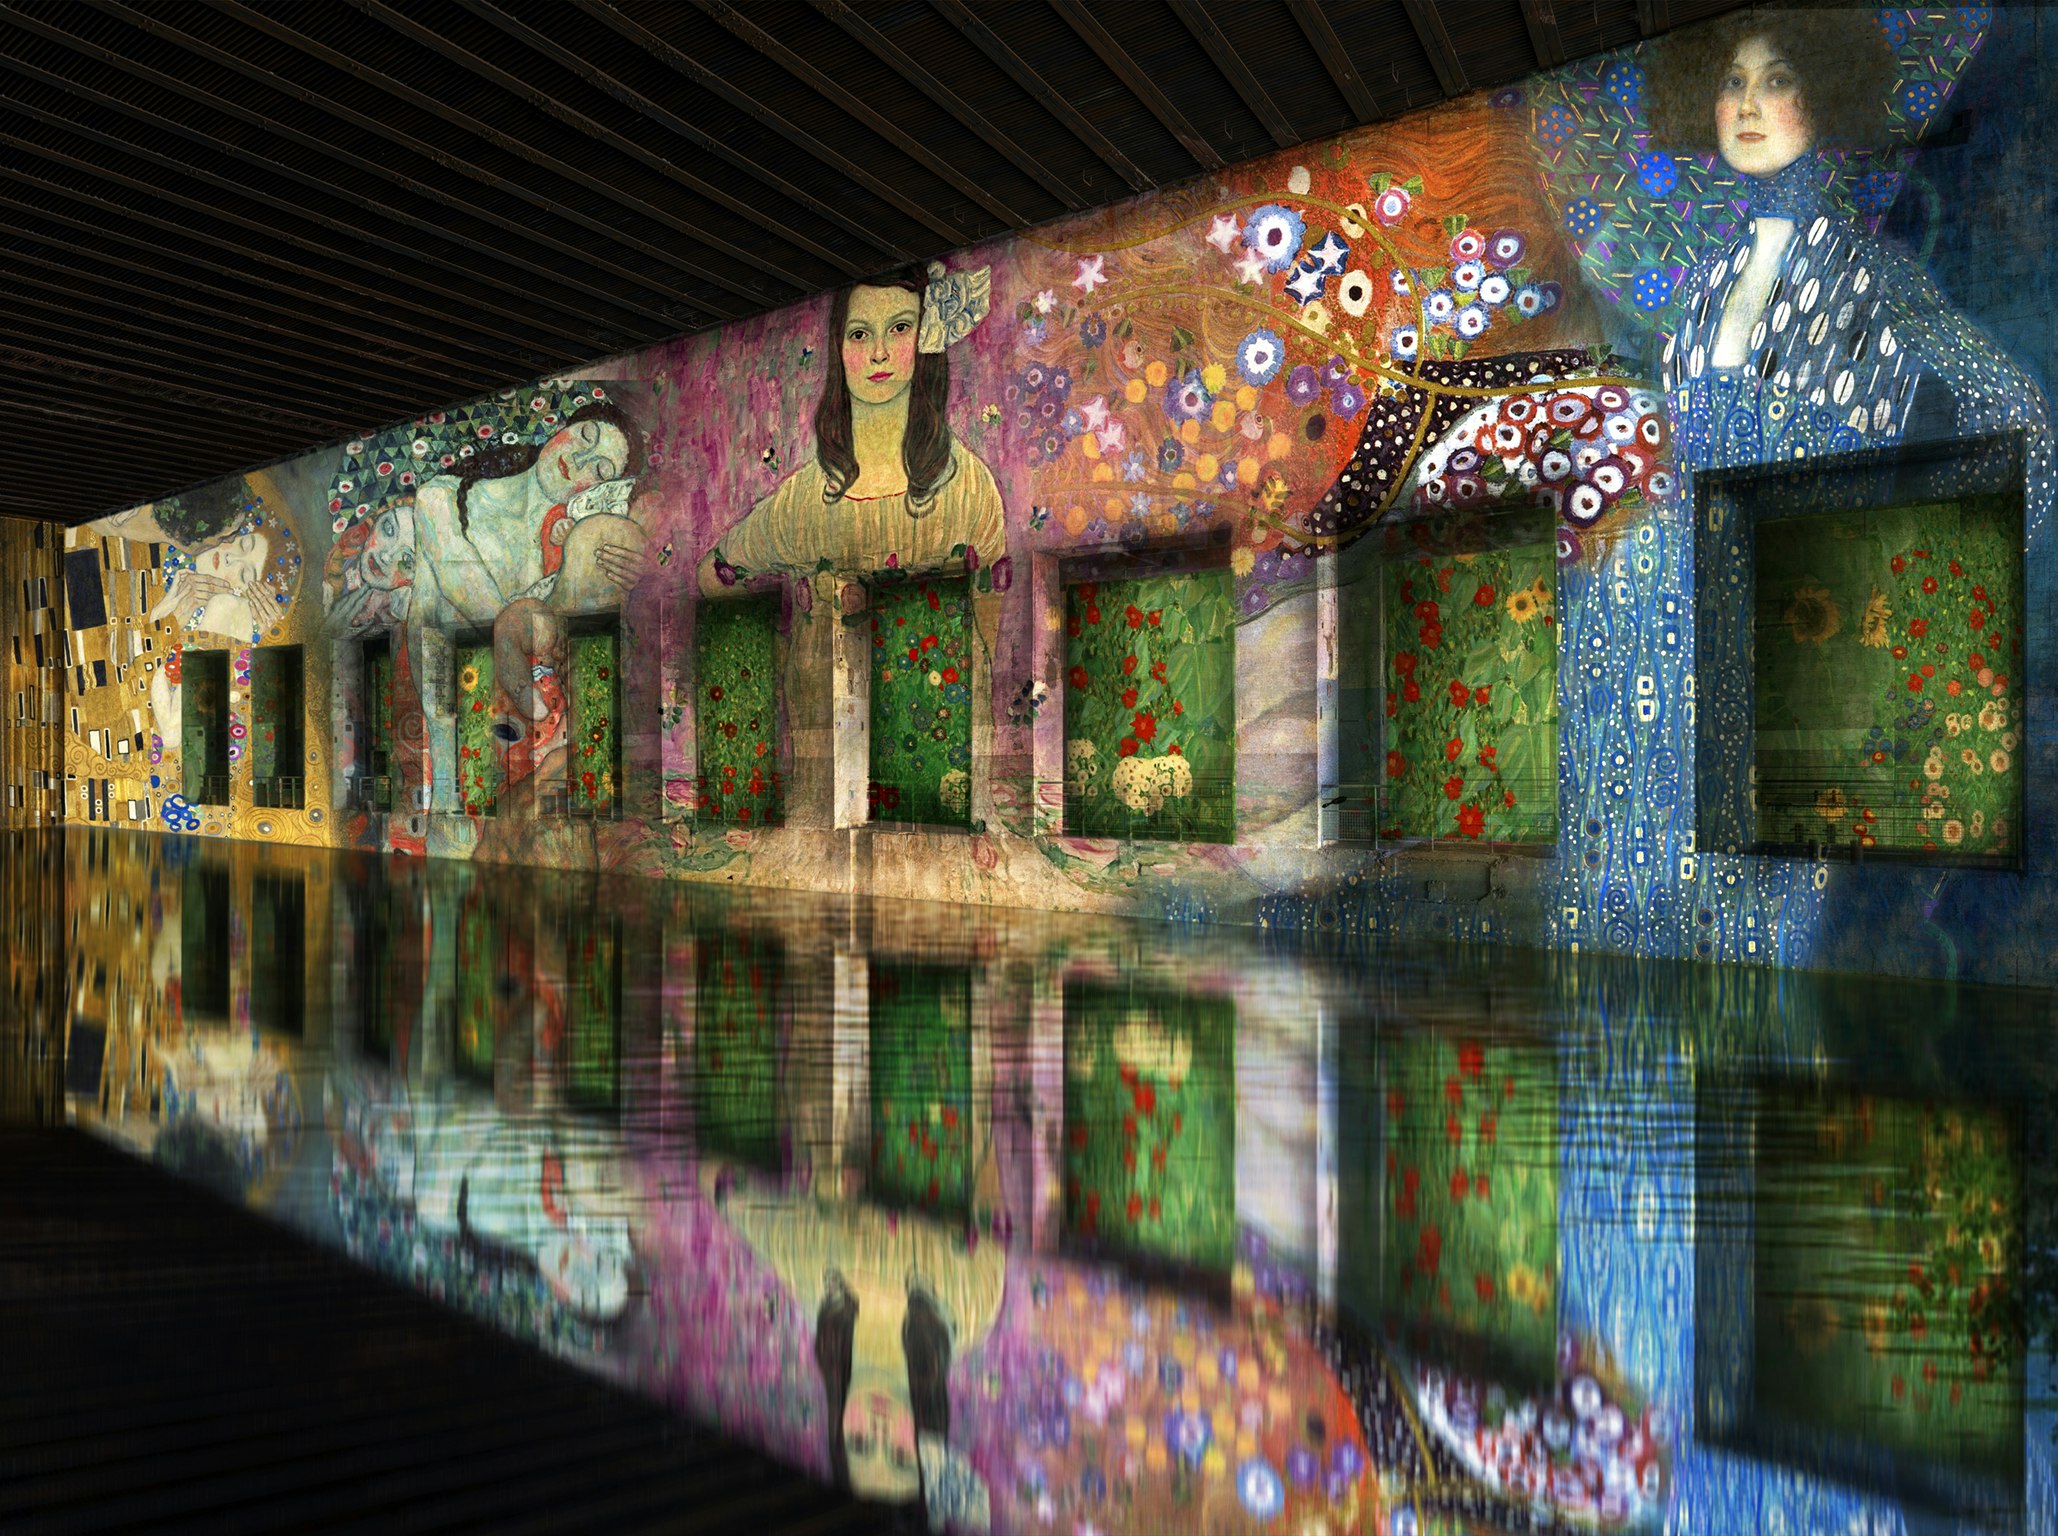 Digital artwork displayed in an underground museum